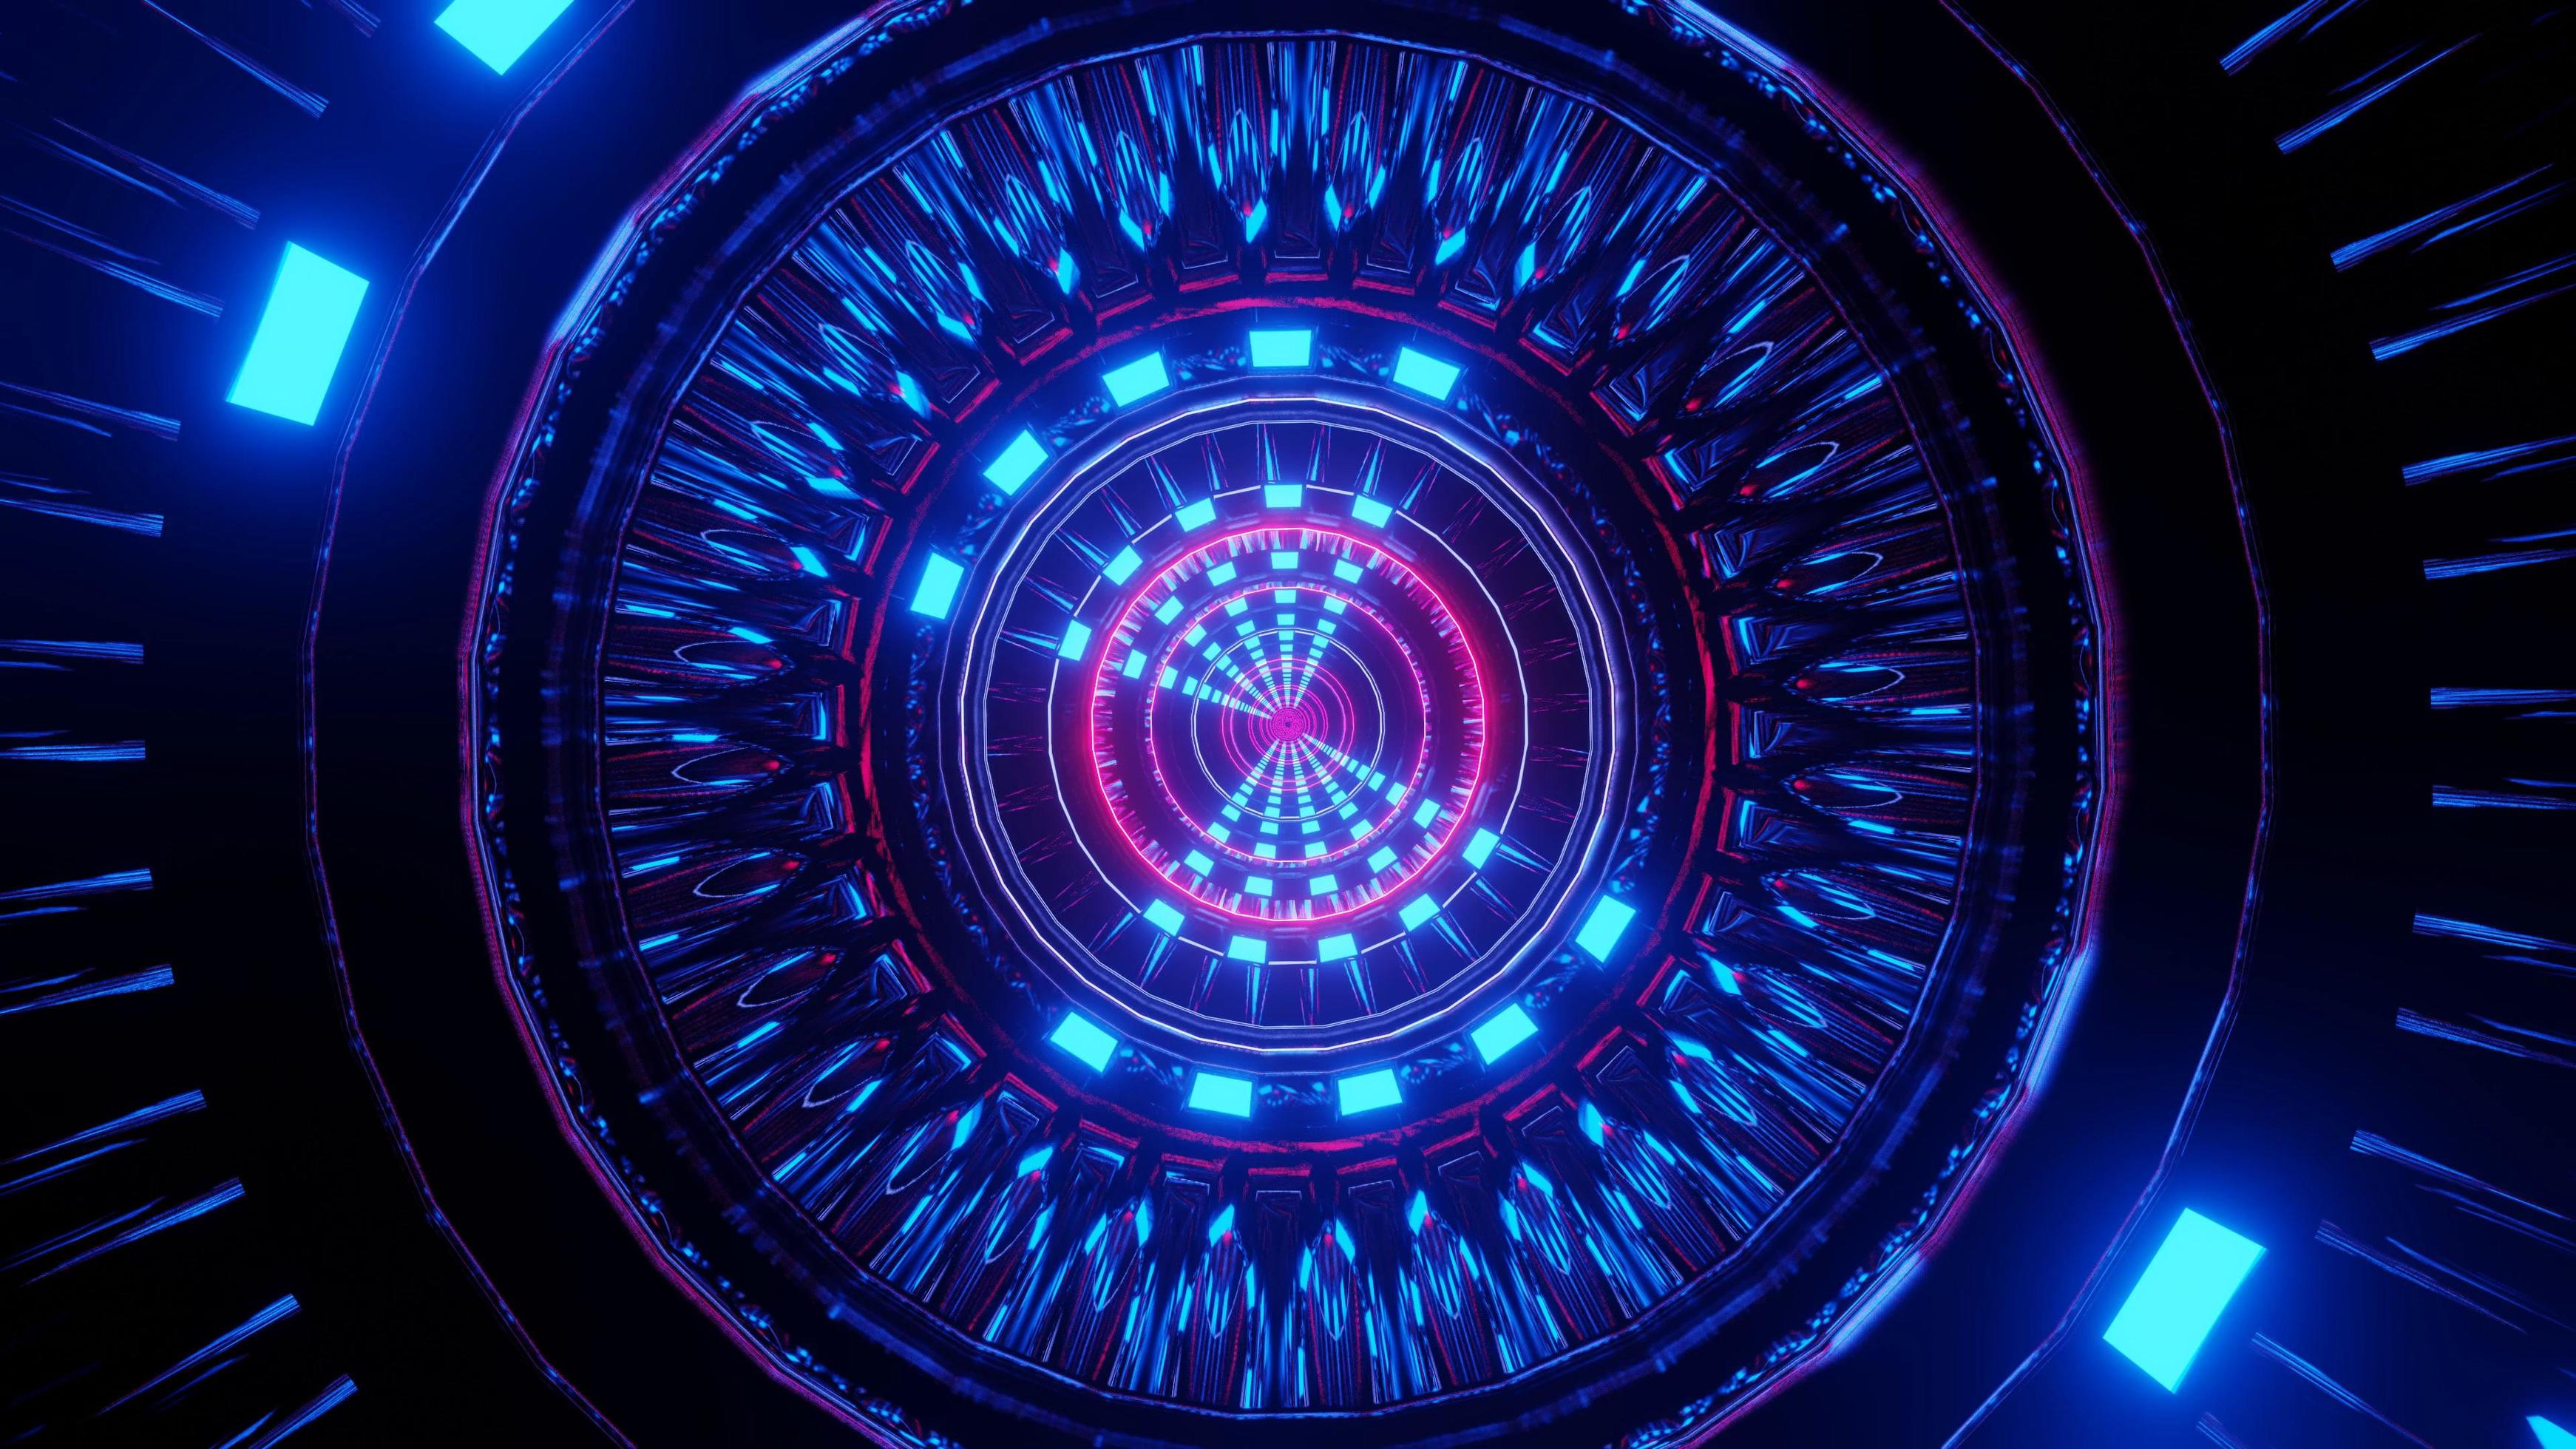 Cổng Neon khoa học viễn tưởng: Bạn có yêu thích thể loại khoa học viễn tưởng với các thiết kế ánh sáng và neon rực rỡ? Hãy thưởng thức hình ảnh cổng neon với những kiến trúc đầy sáng tạo, hứa hẹn sẽ đưa bạn đến các tinh vân và hành tinh xa xôi.